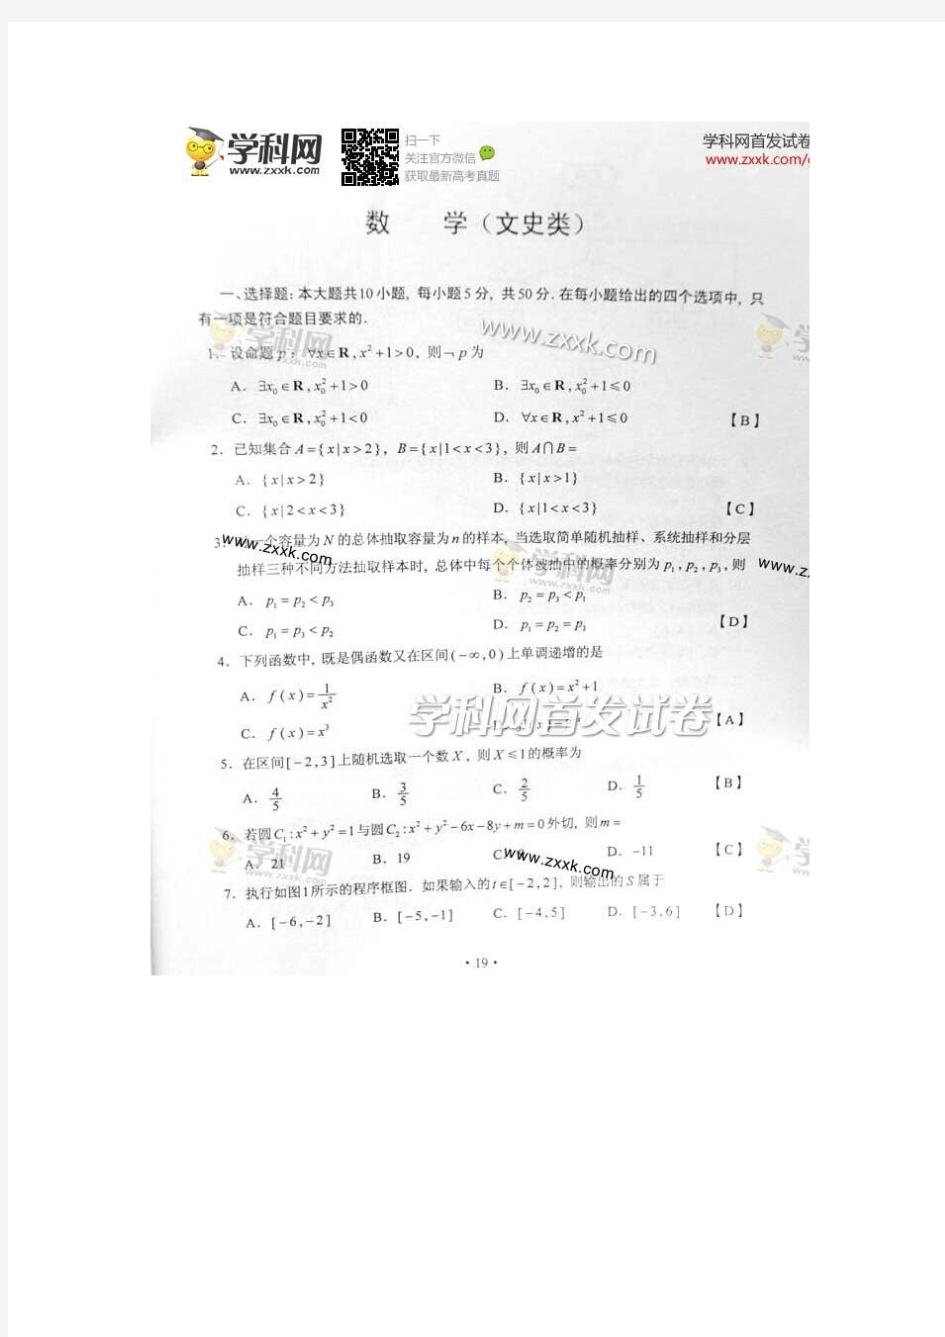 2014年高考文科数学湖南卷真题附标准答案(抢鲜版)